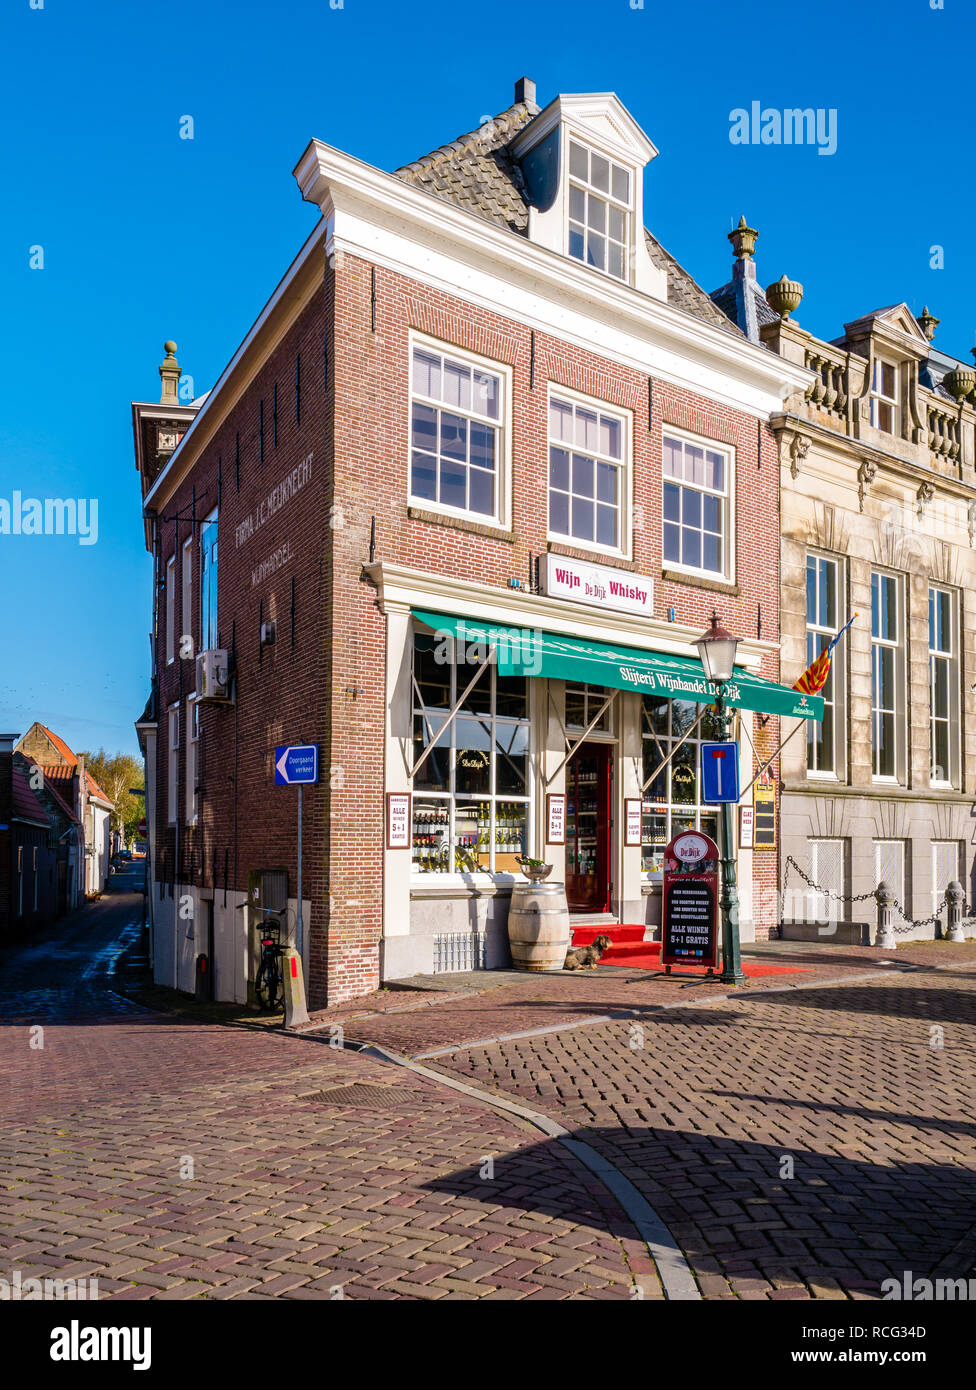 Scena di strada con wine shop nella storica casa nella città vecchia di Enkhuizen, Noord-Holland, Paesi Bassi Foto Stock